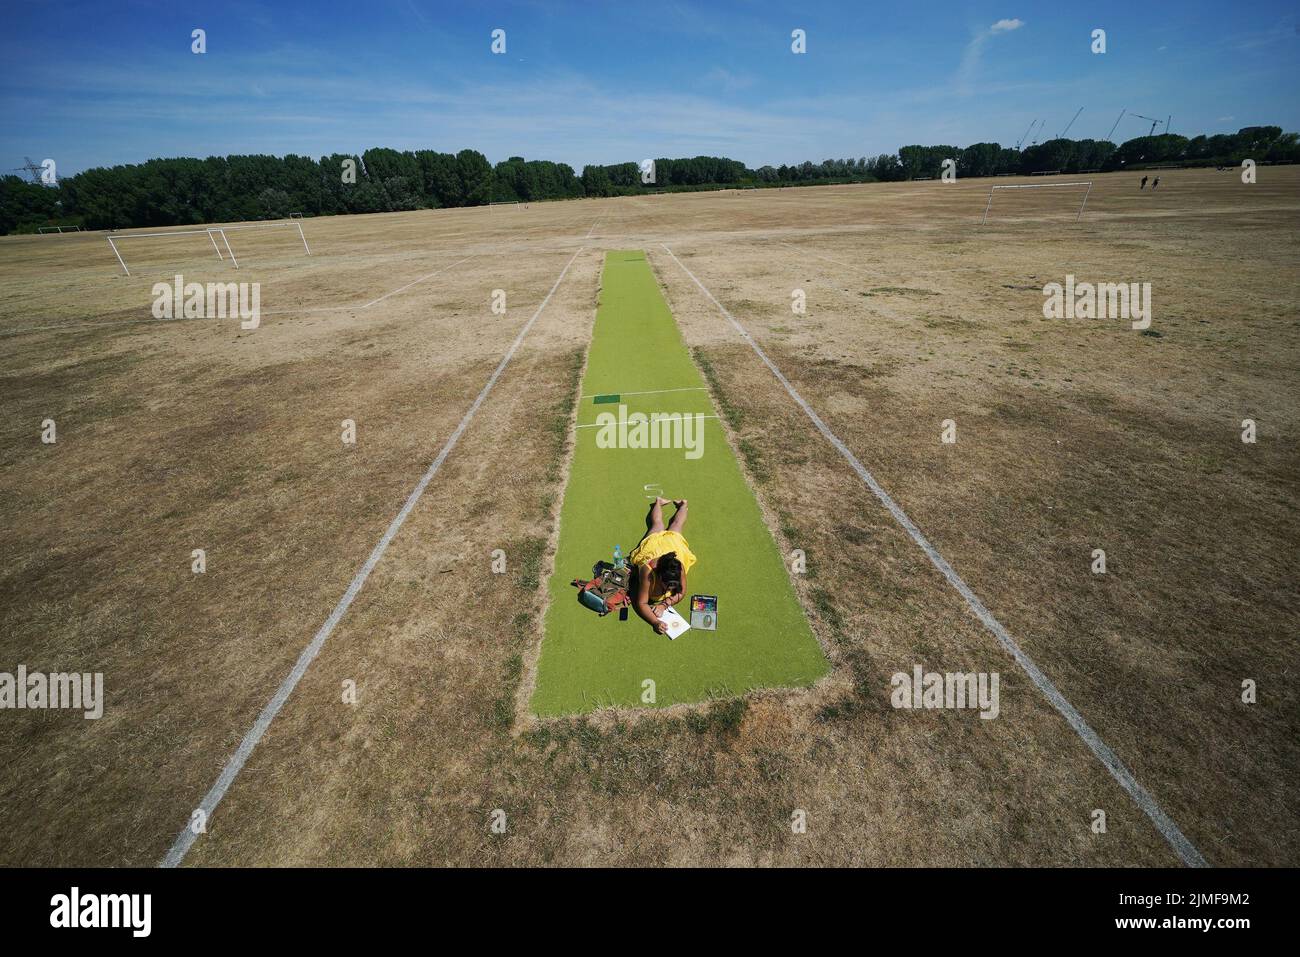 Une femme se détend sur un terrain de cricket vert entouré de terrains de football parchés, à Hackney Marshes, à l'est de Londres. Date de la photo: Samedi 6 août 2022. Banque D'Images